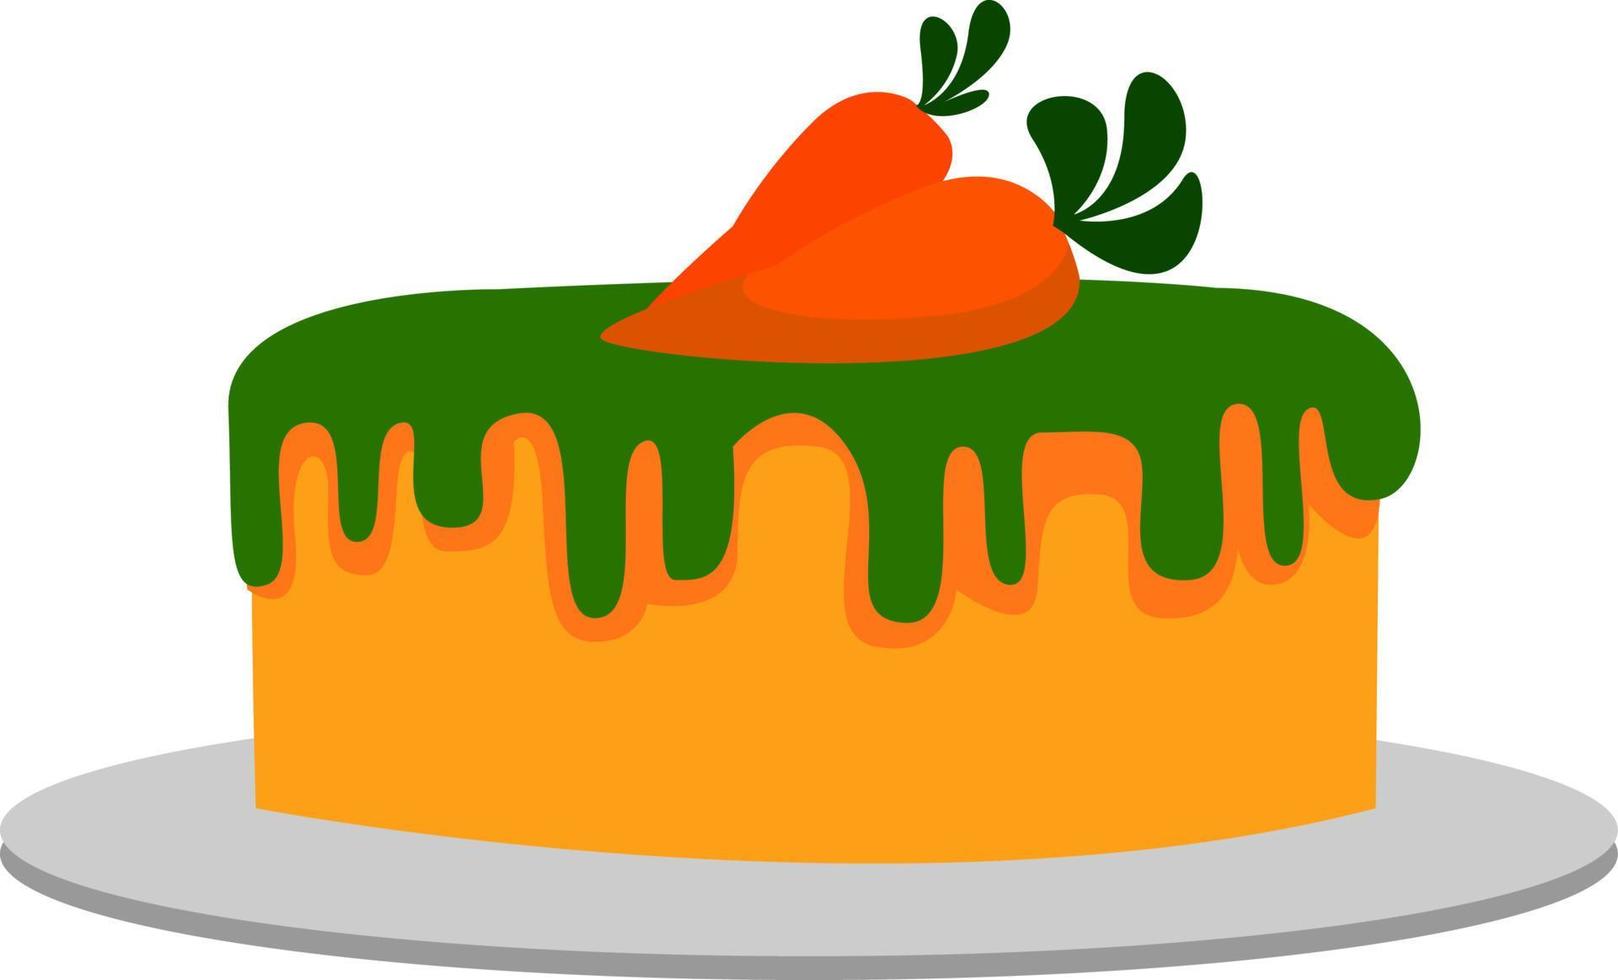 Carrot cake, illustration, vector on white background.